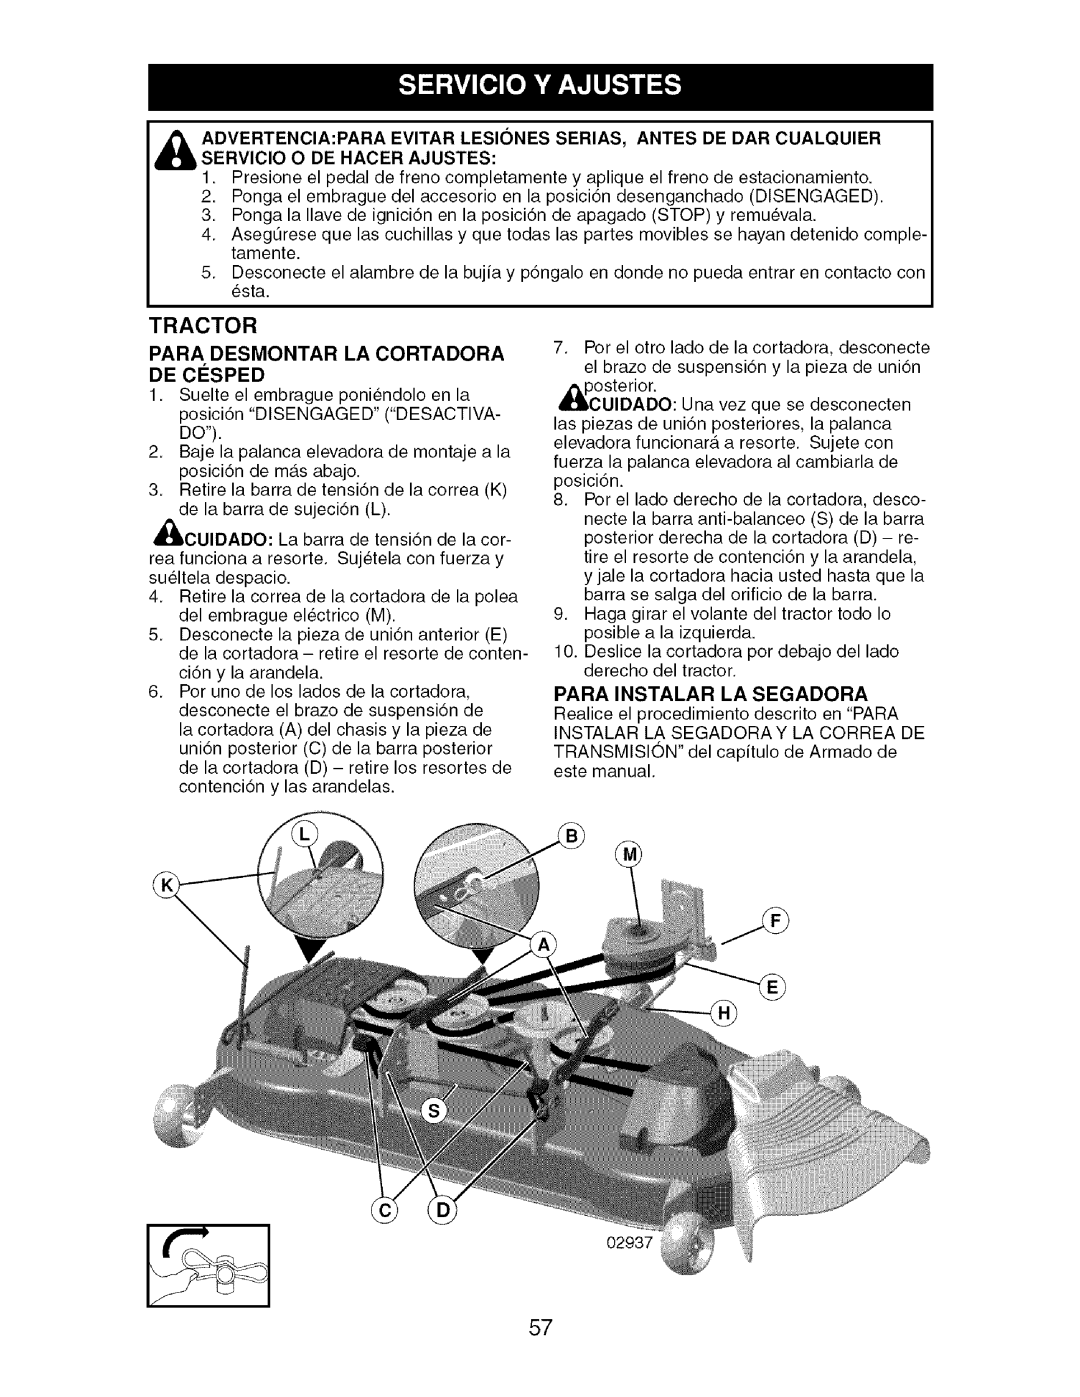 Craftsman 917.276920 manual Para Desmontar LA Cortadora, Para Instalar LA Segadora 